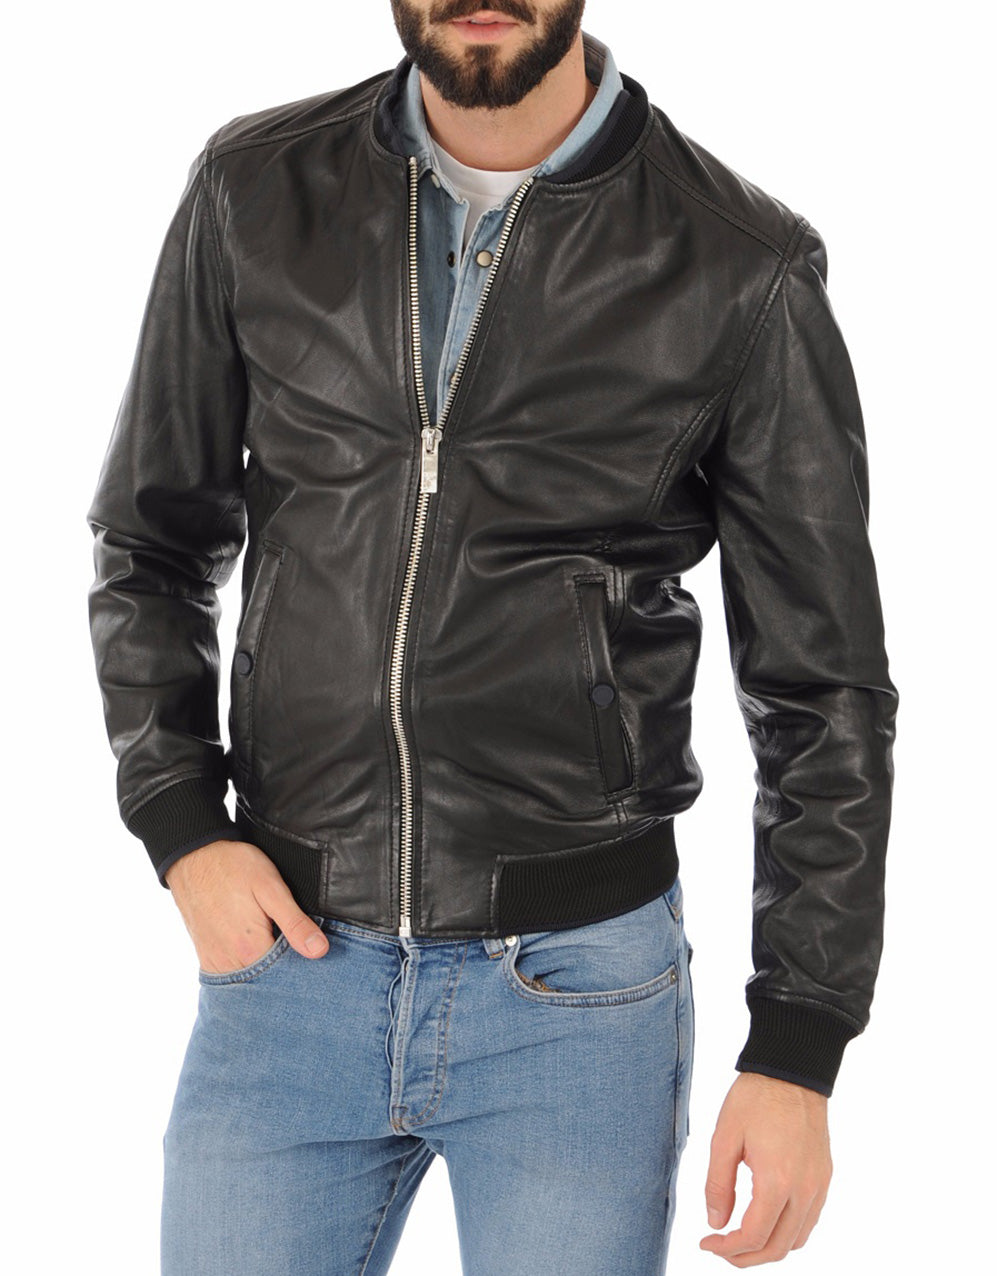 Men Lambskin Genuine Leather Jacket MJ182 SkinOutfit